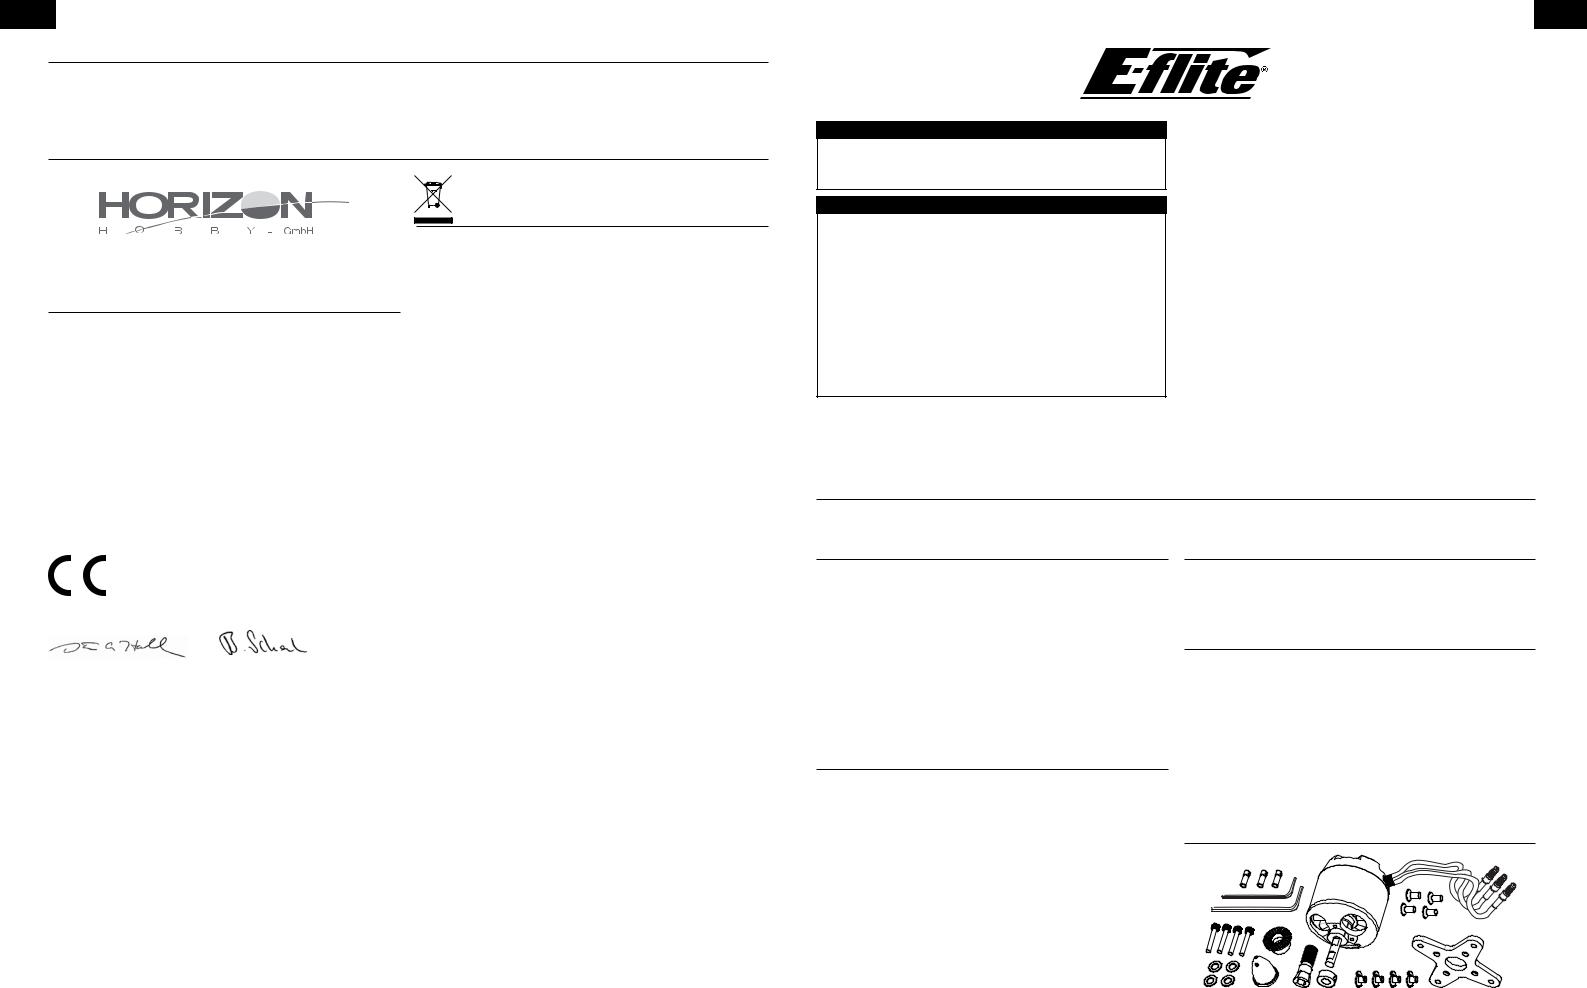 E-flite Power 52 User Manual